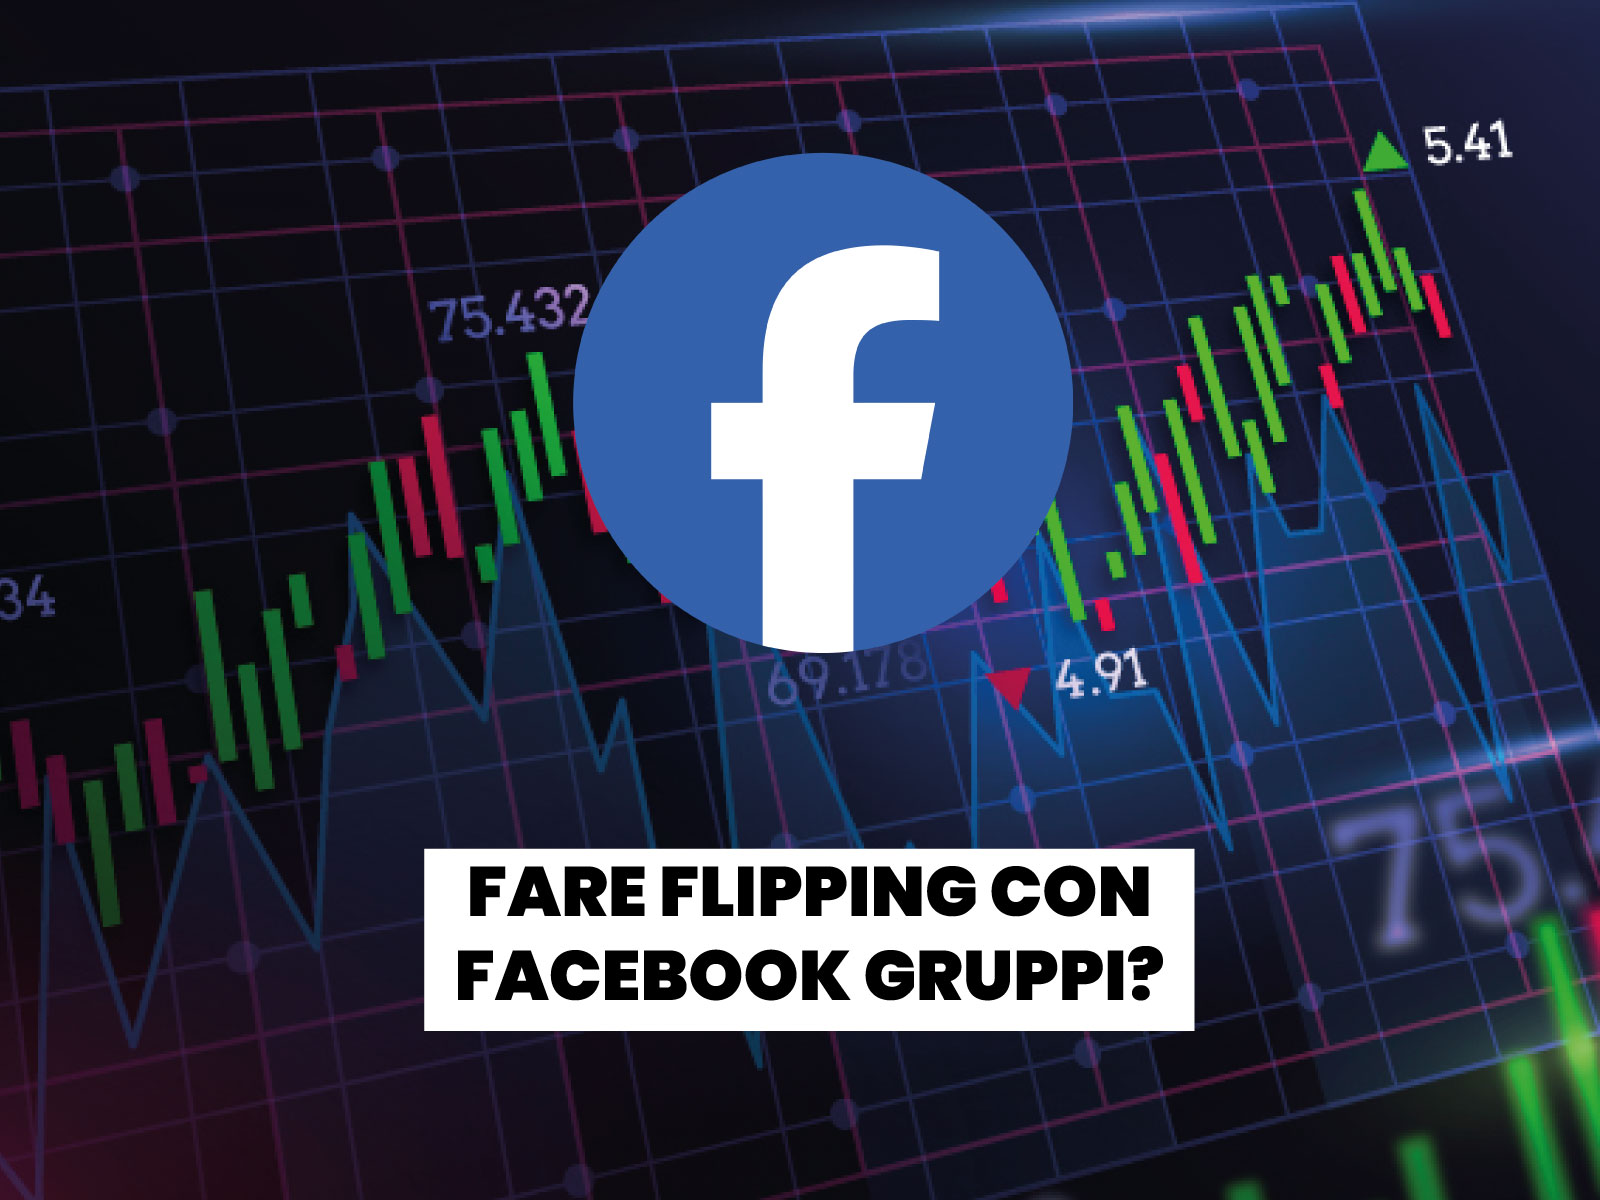 Approfondiamo il Flipping partendo dalle basi. Come utilizzare i gruppi Facebook per guadagnaret.